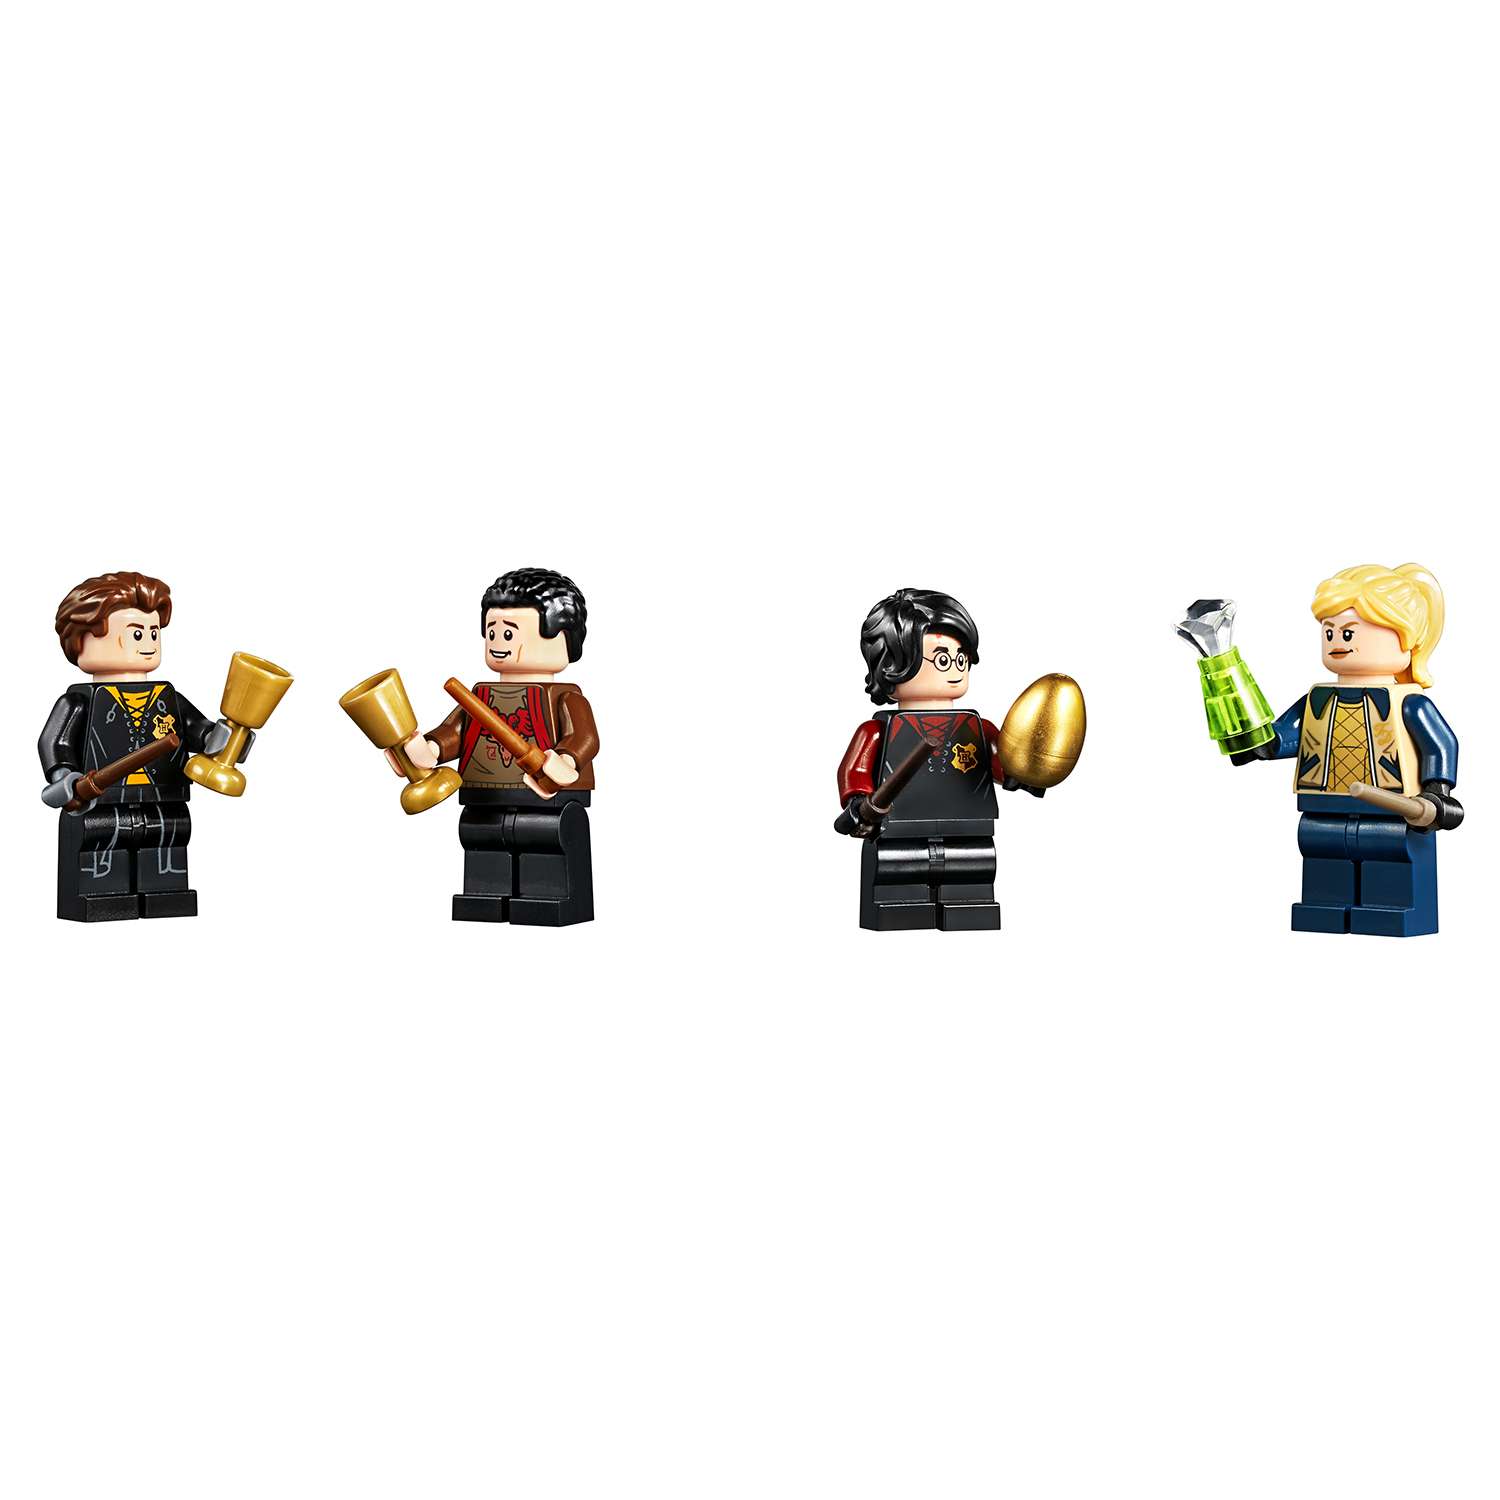 Конструктор LEGO Harry Potter Турнир трёх волшебников венгерская хвосторога 75946 - фото 14